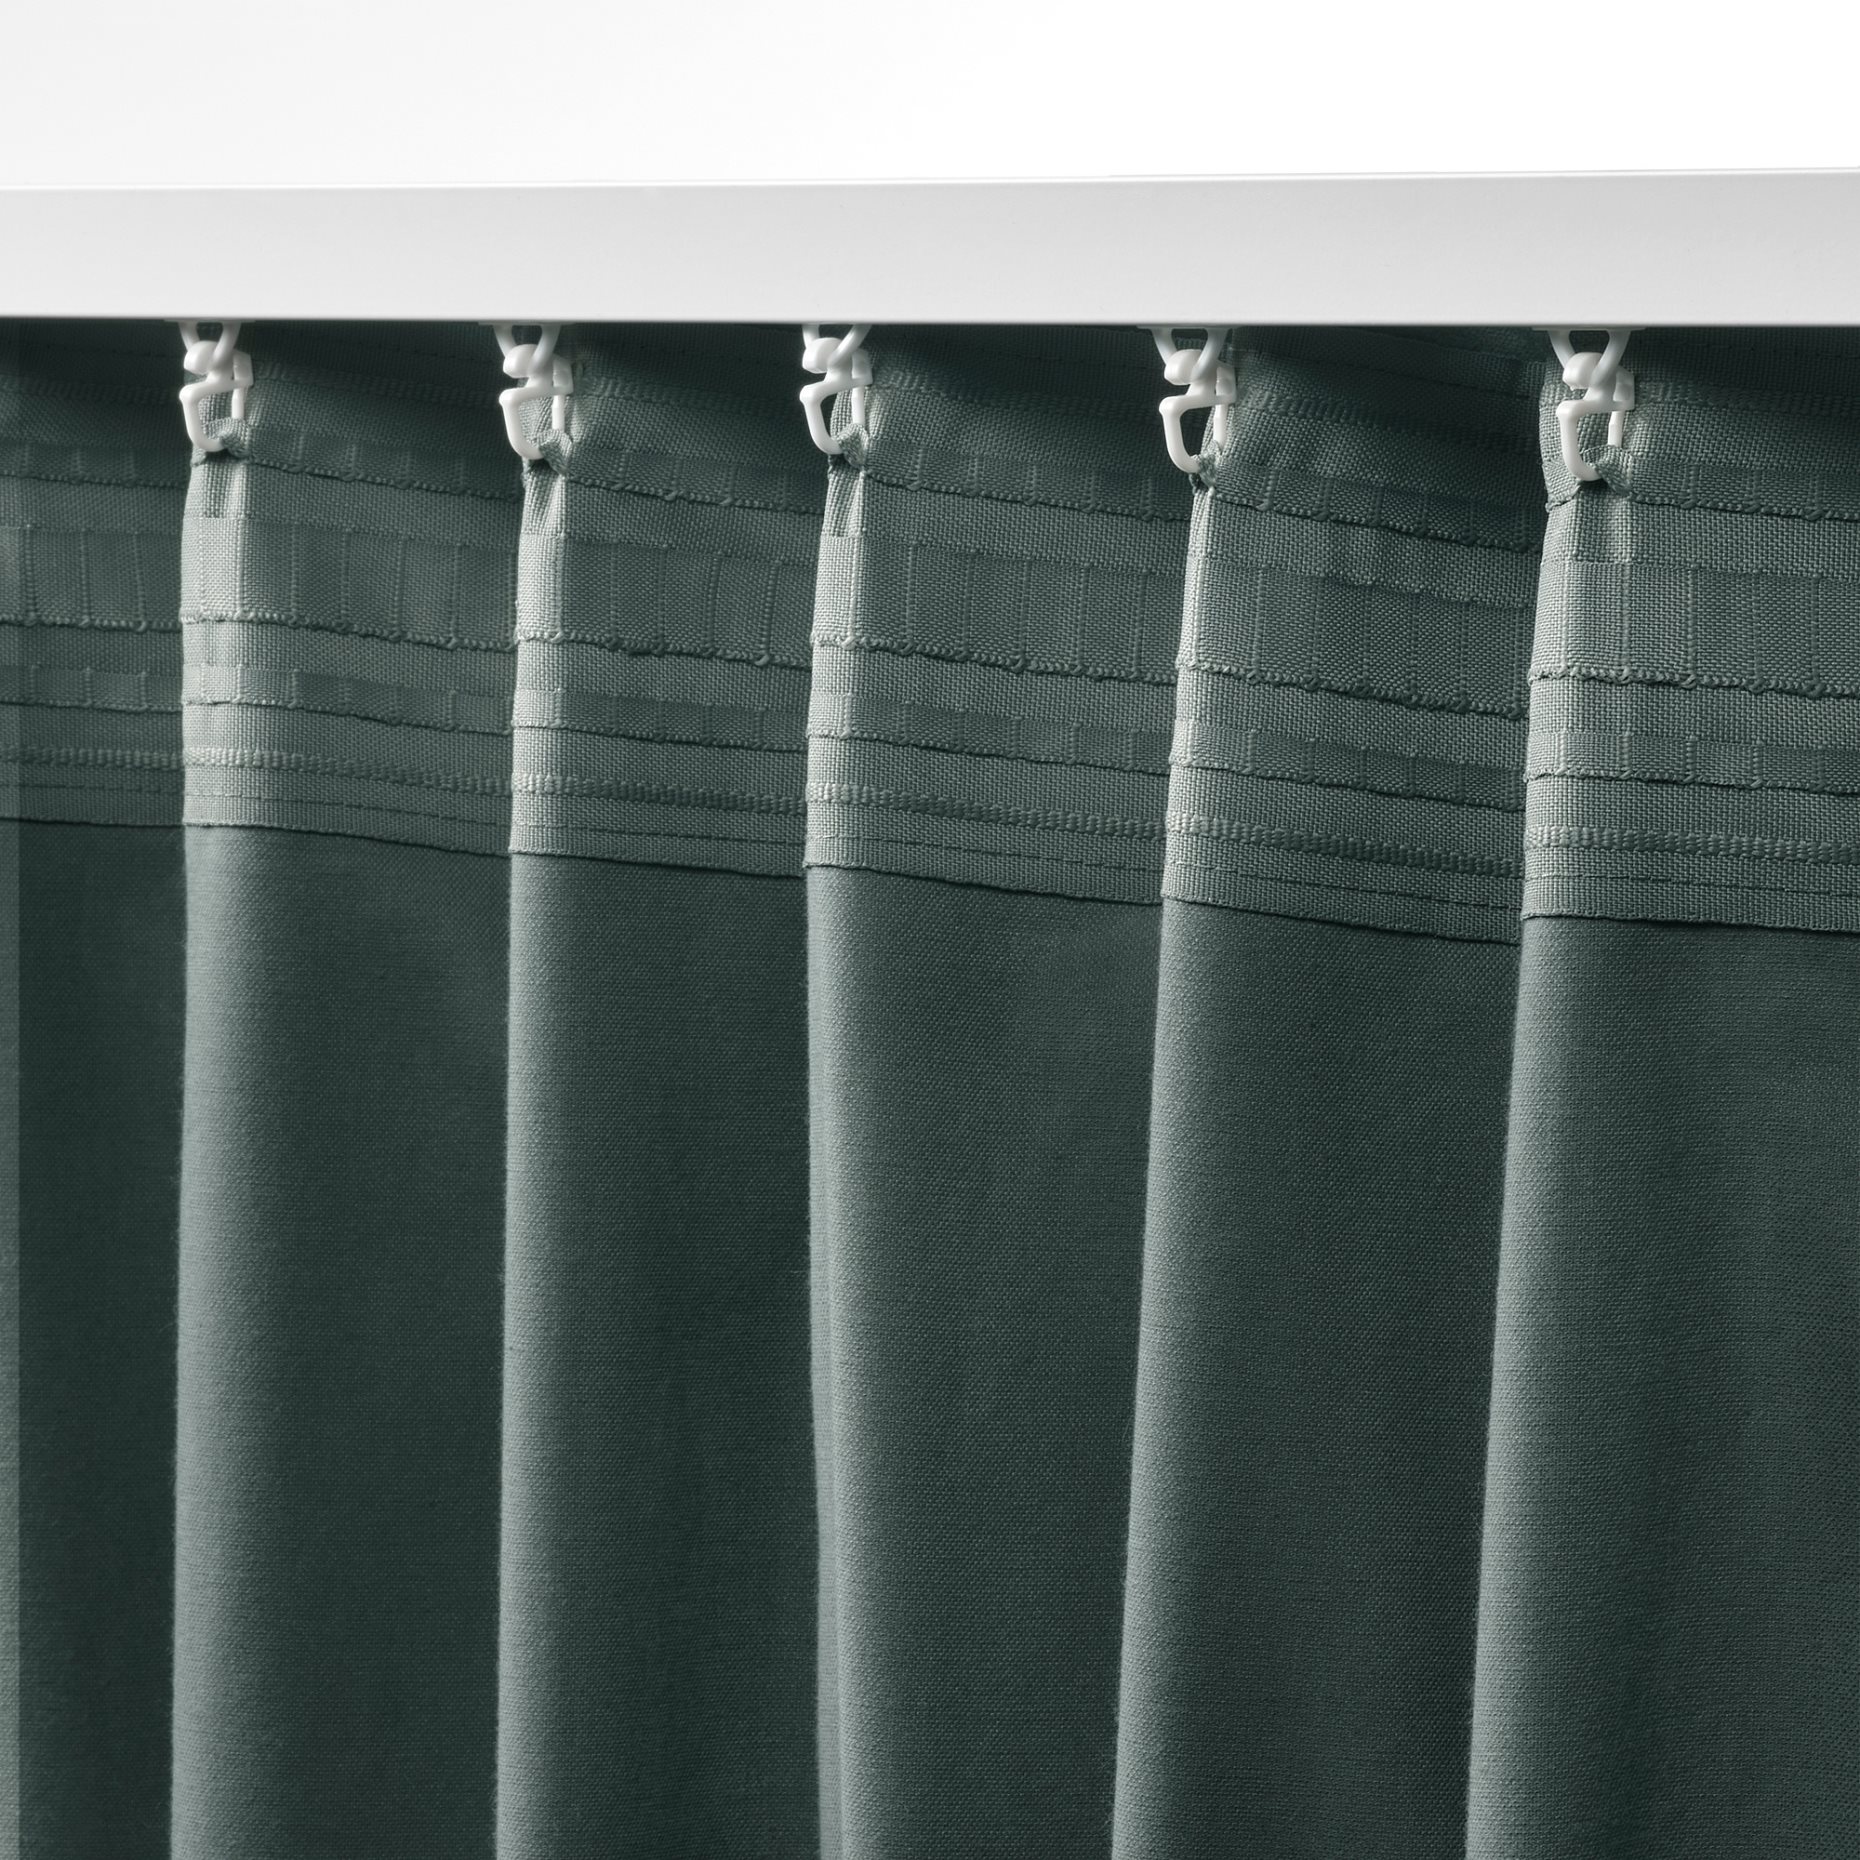 SANELA, room darkening curtains 140x300 cm, 1 pair, 705.129.50